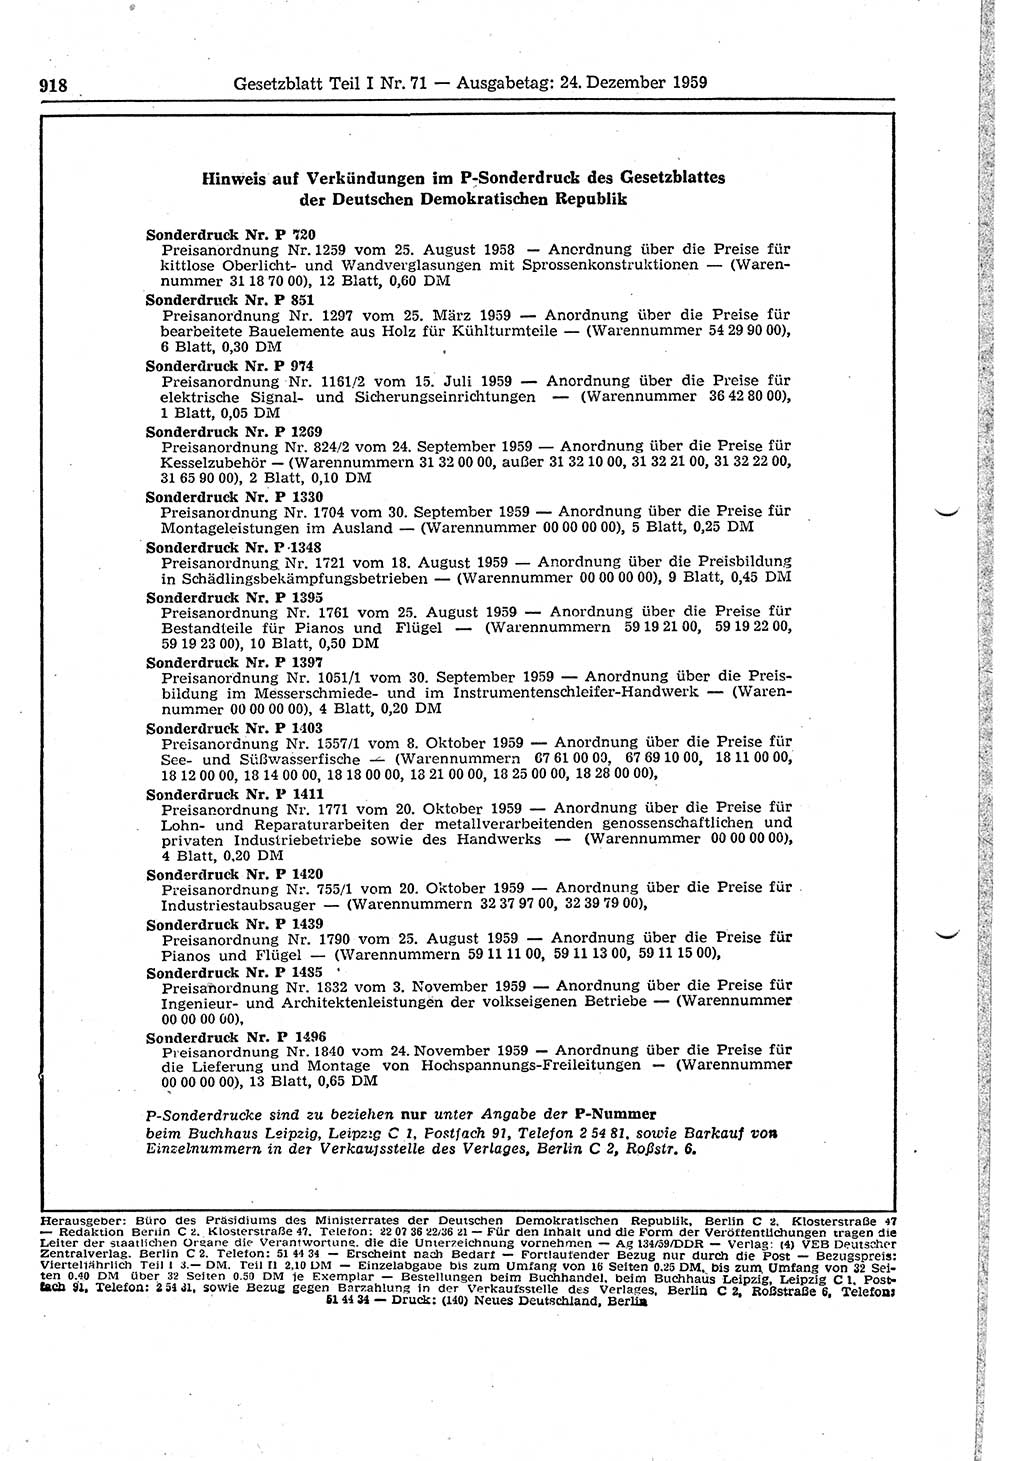 Gesetzblatt (GBl.) der Deutschen Demokratischen Republik (DDR) Teil Ⅰ 1959, Seite 918 (GBl. DDR Ⅰ 1959, S. 918)